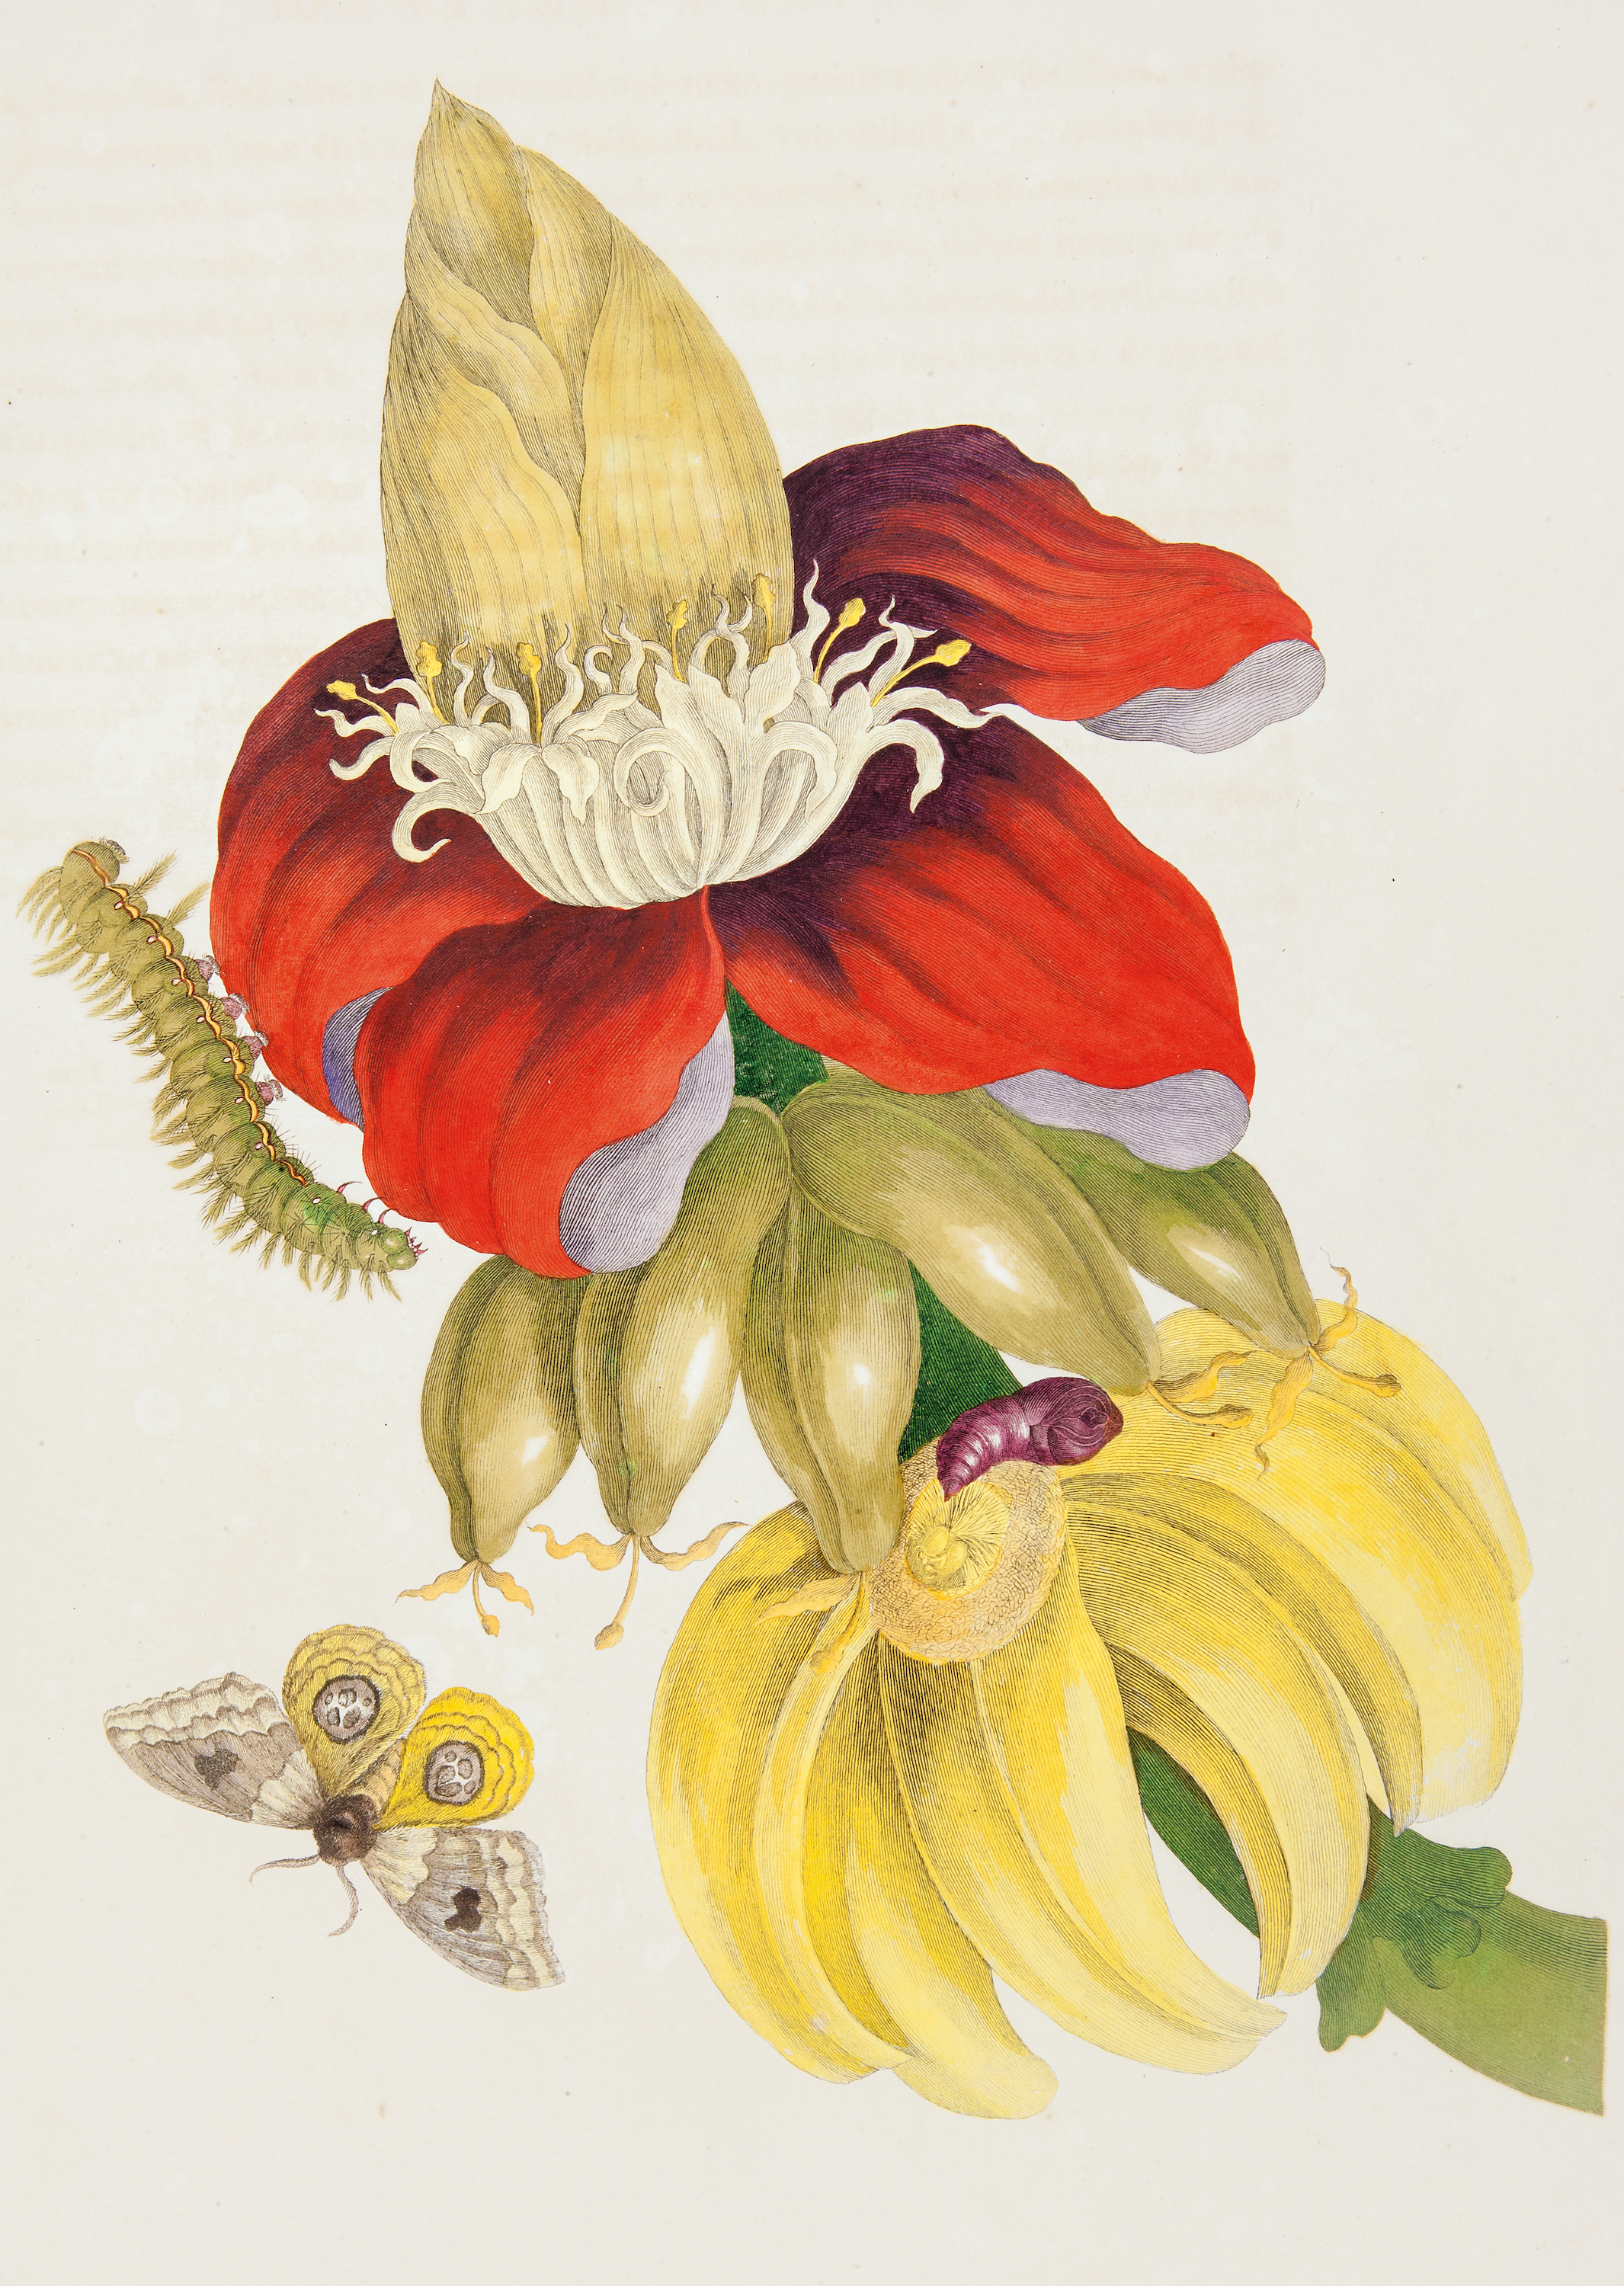 바나나 줄기와 불스아이 나방의 생애주기(Banana plant and Life Stages of a Bullseye Moth) by Pieter Sluyter after Maria Sibylla Merian - 1705 